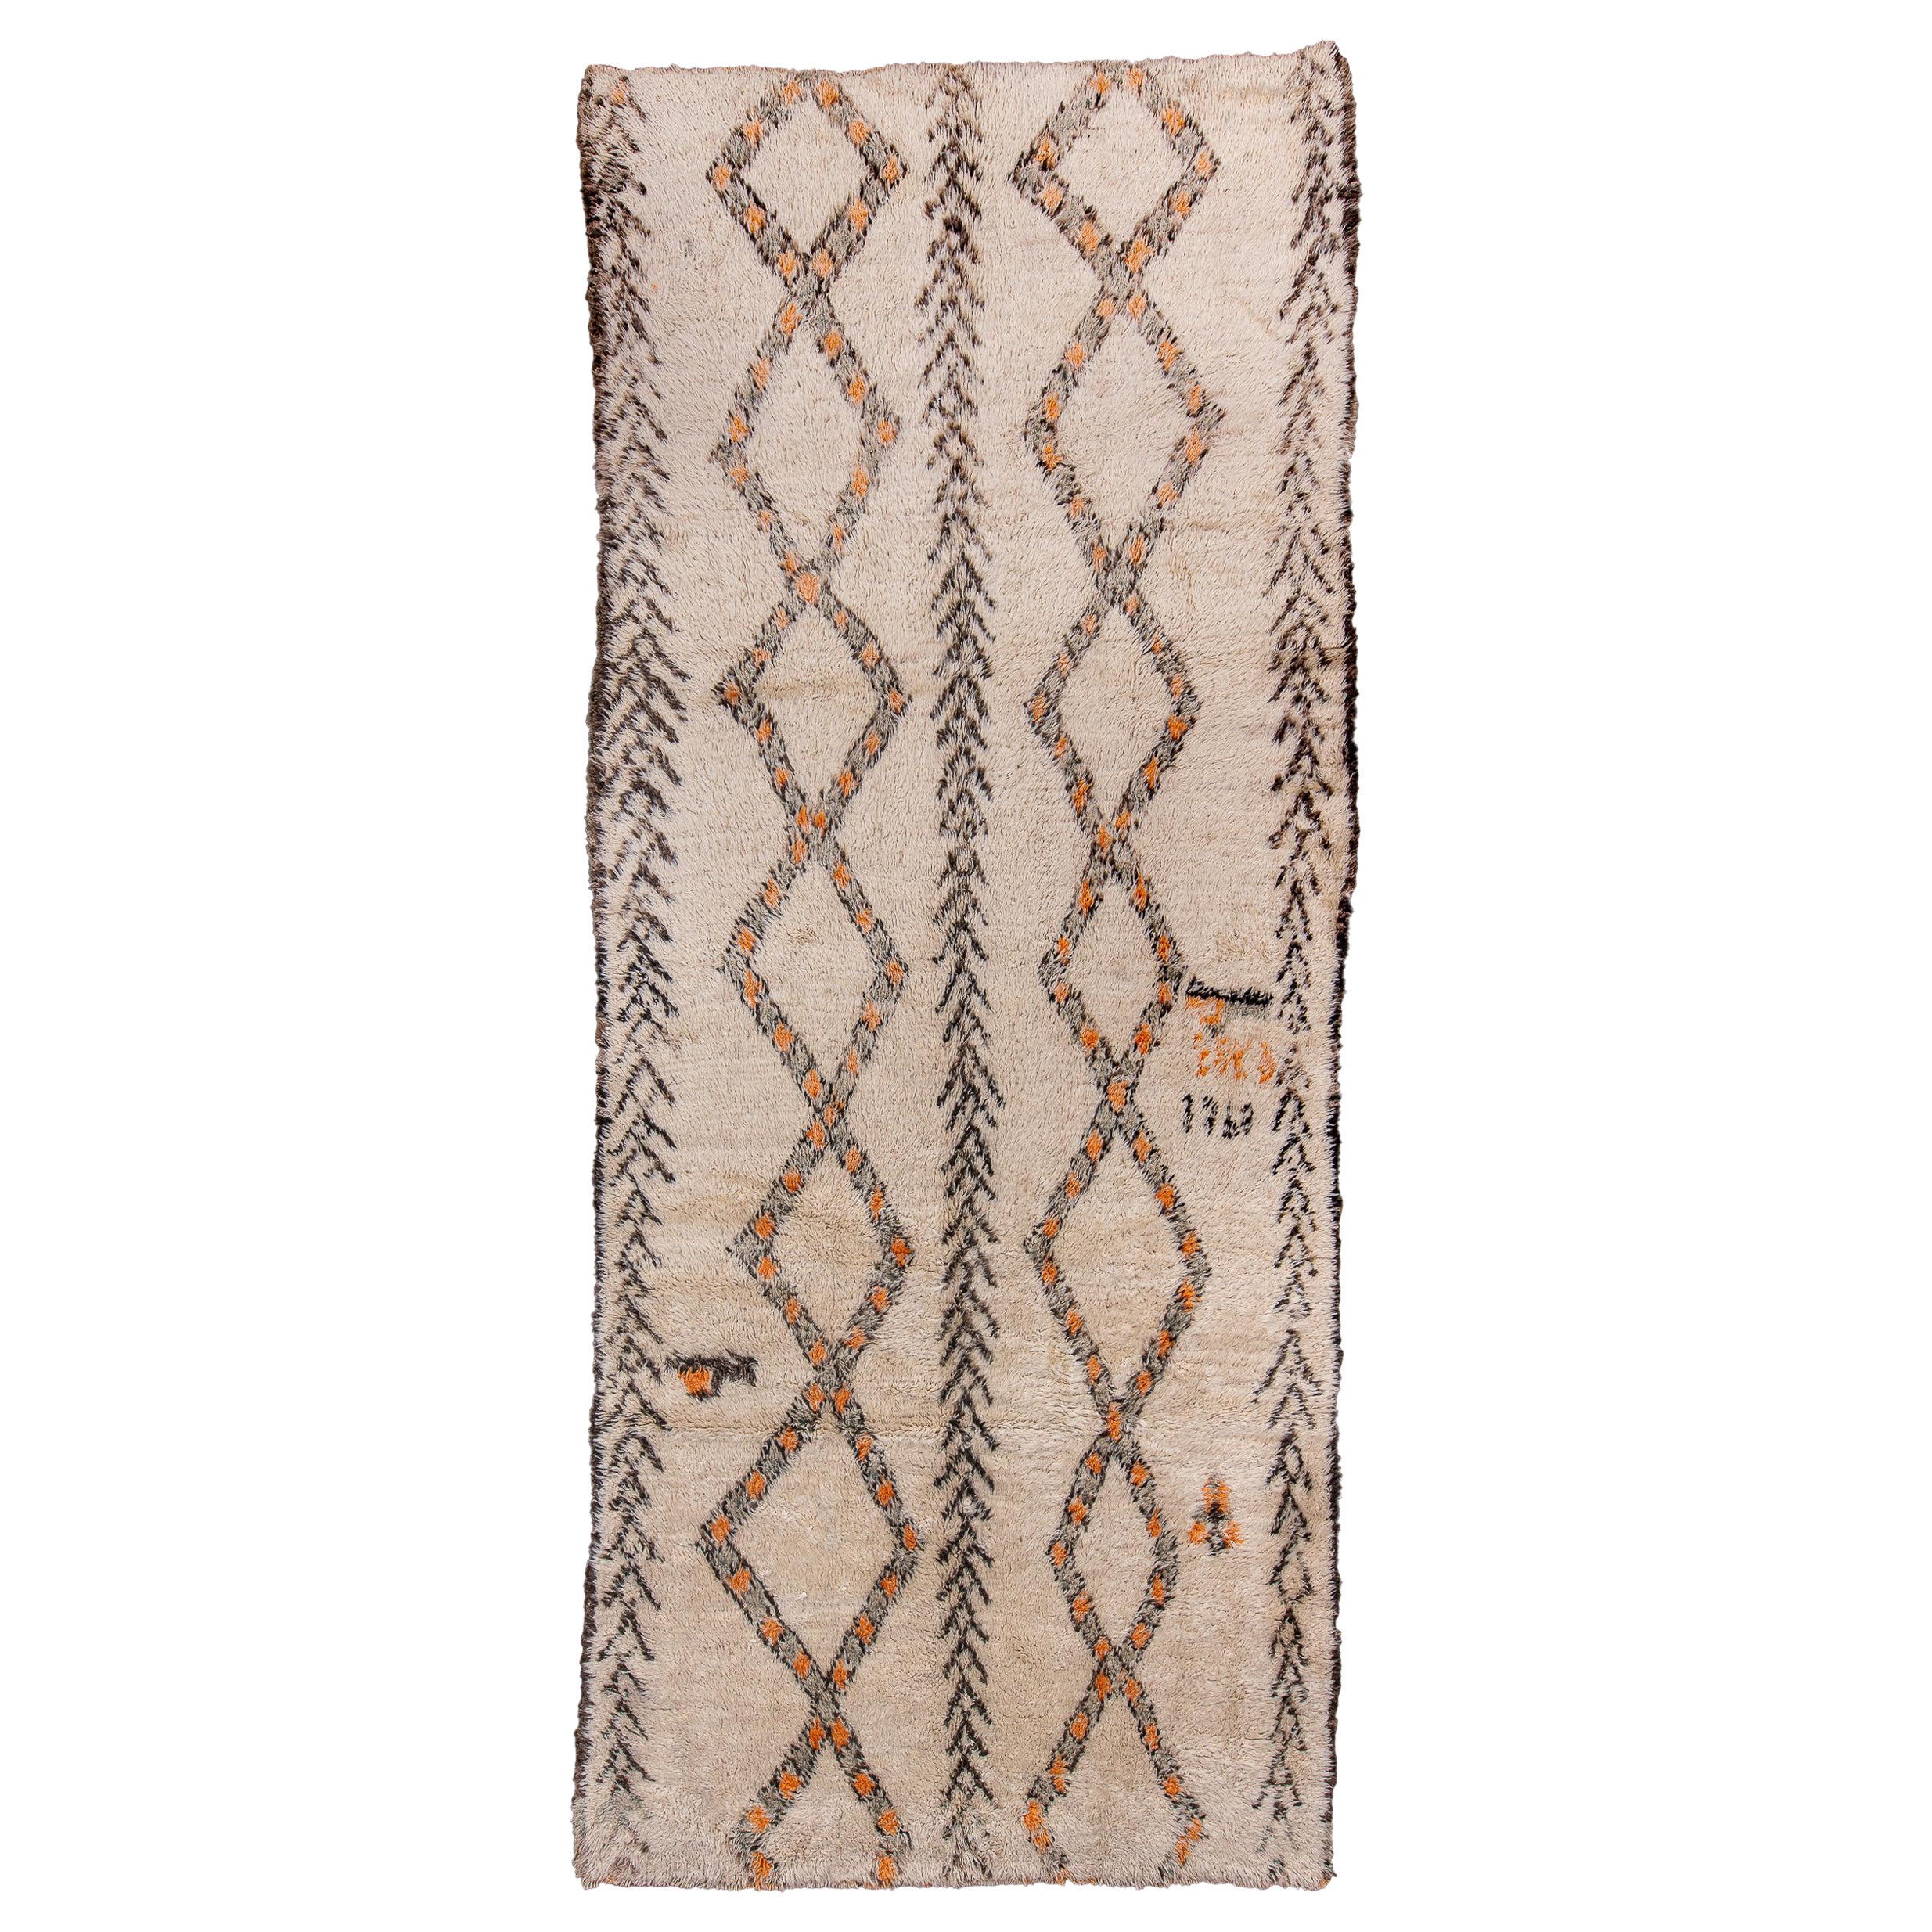 Vintage Ivory Moroccan Rug with Herringbone Design